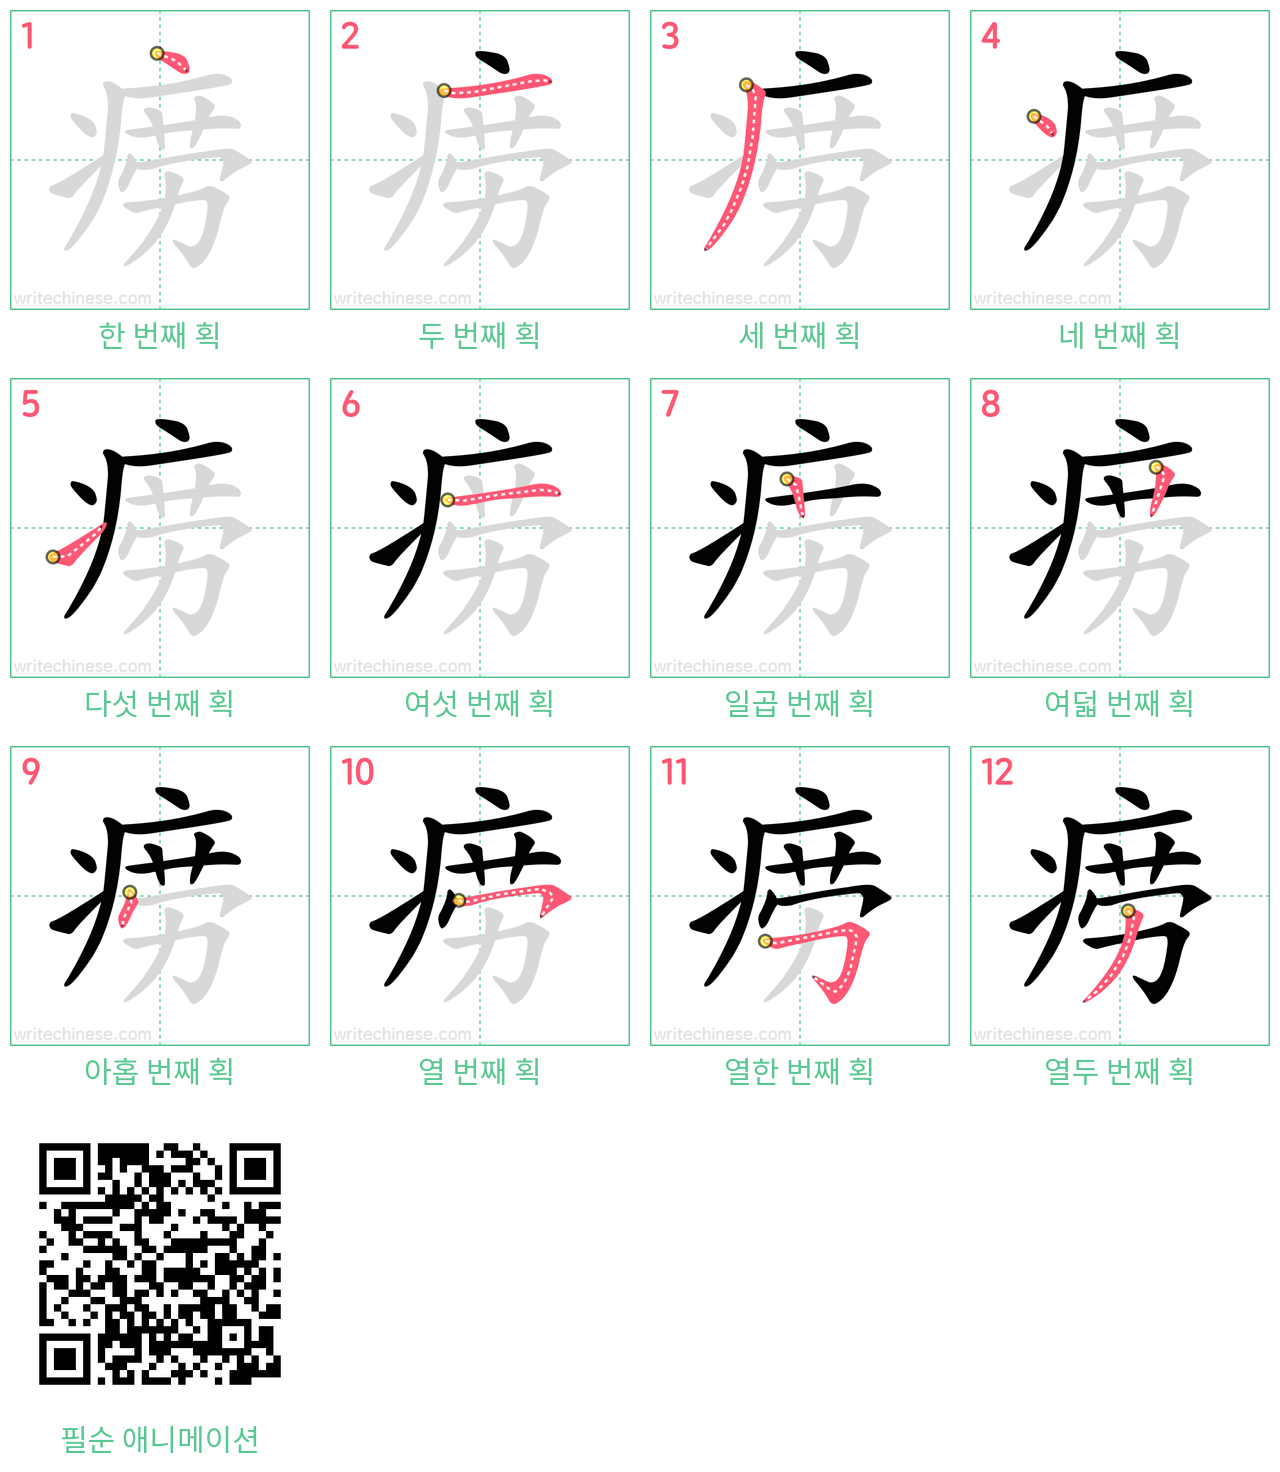 痨 step-by-step stroke order diagrams